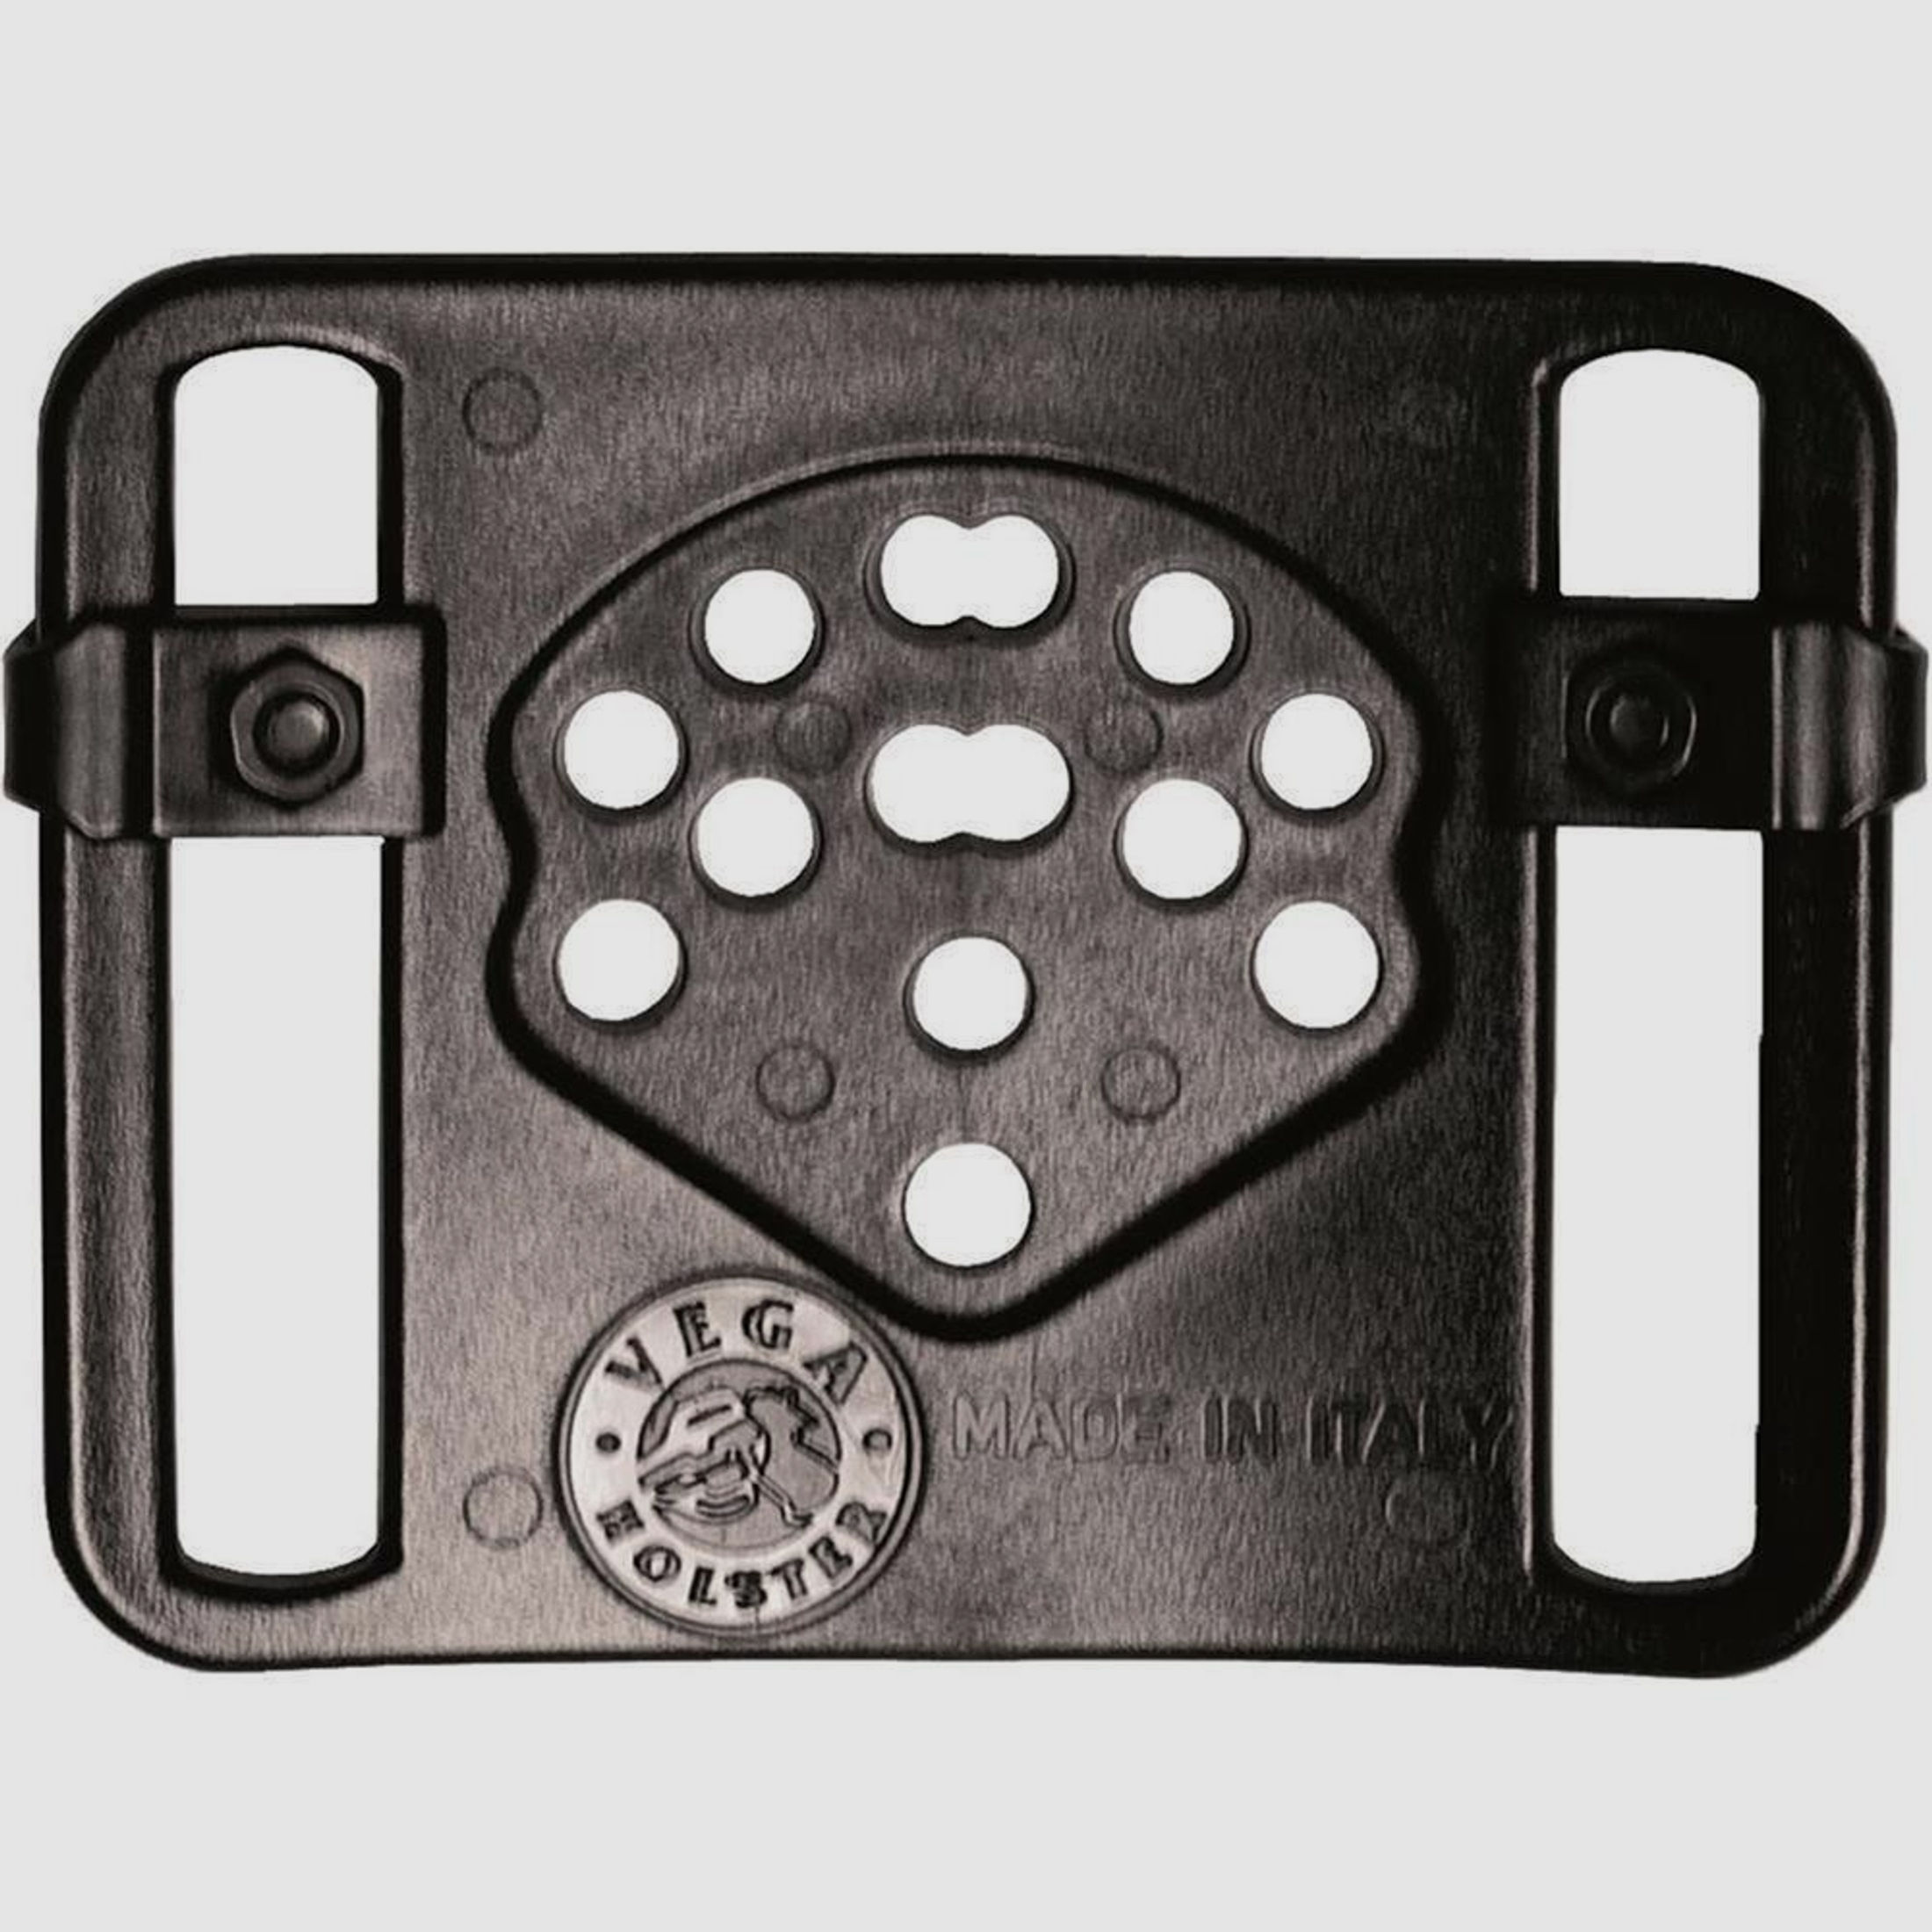 Polymerholster “RESCUE” mit Sicherung Walther P99 Rechtshänder